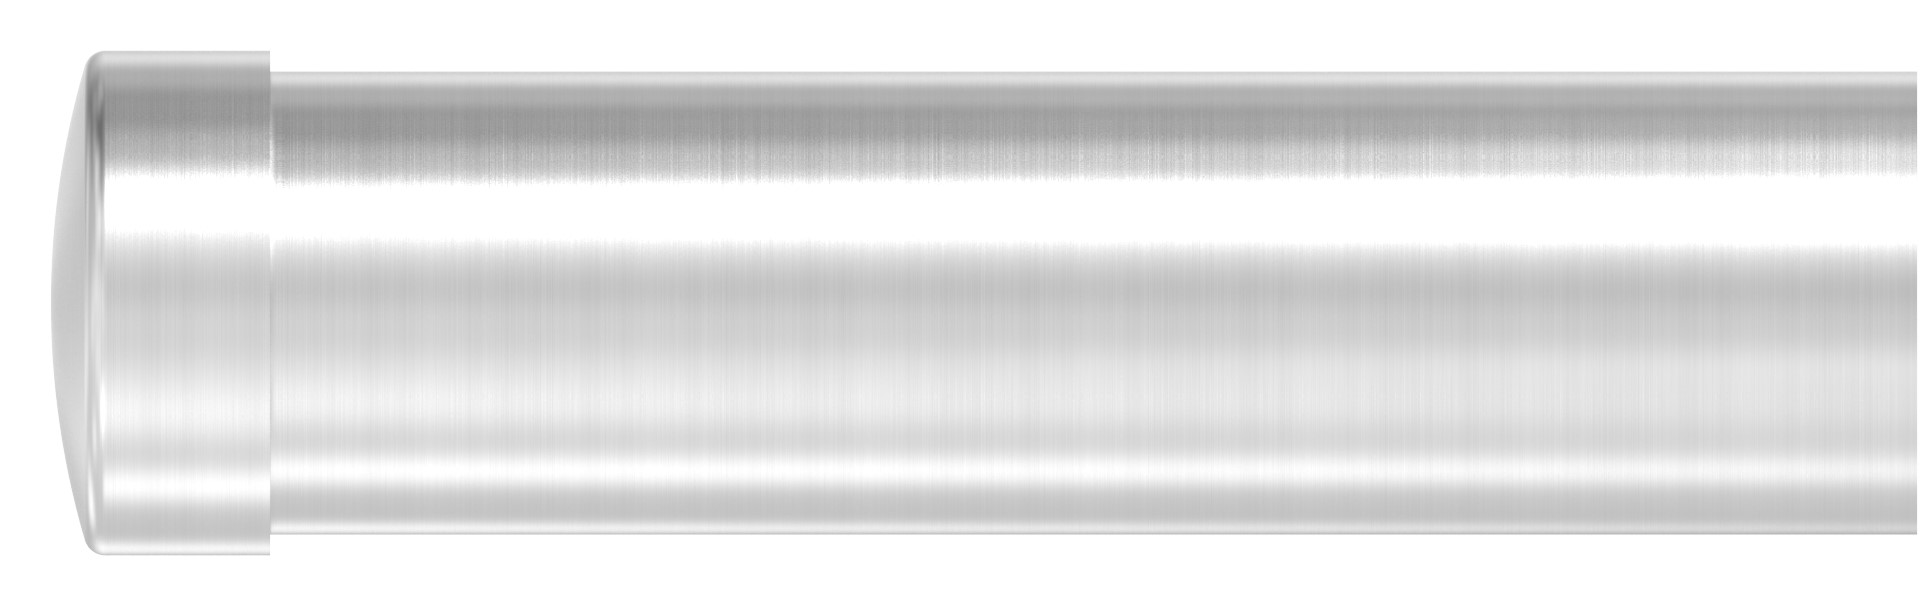 Endkappe zum Überstecken für Rohr 48,3mm, V2A